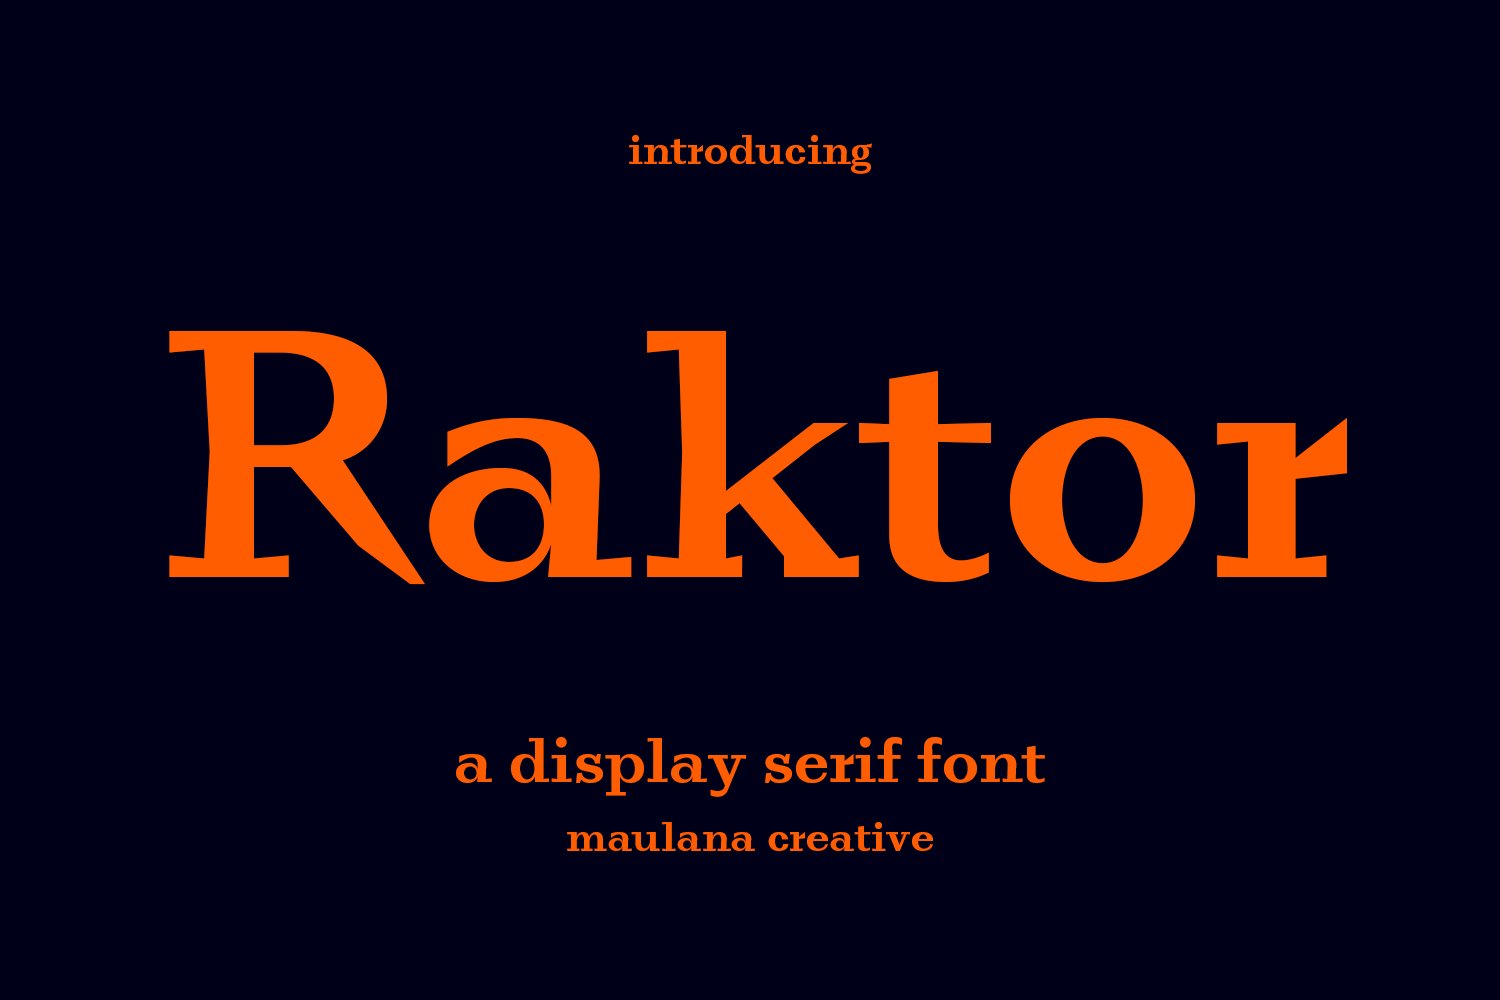 Raktor Serif Display Font cover image.